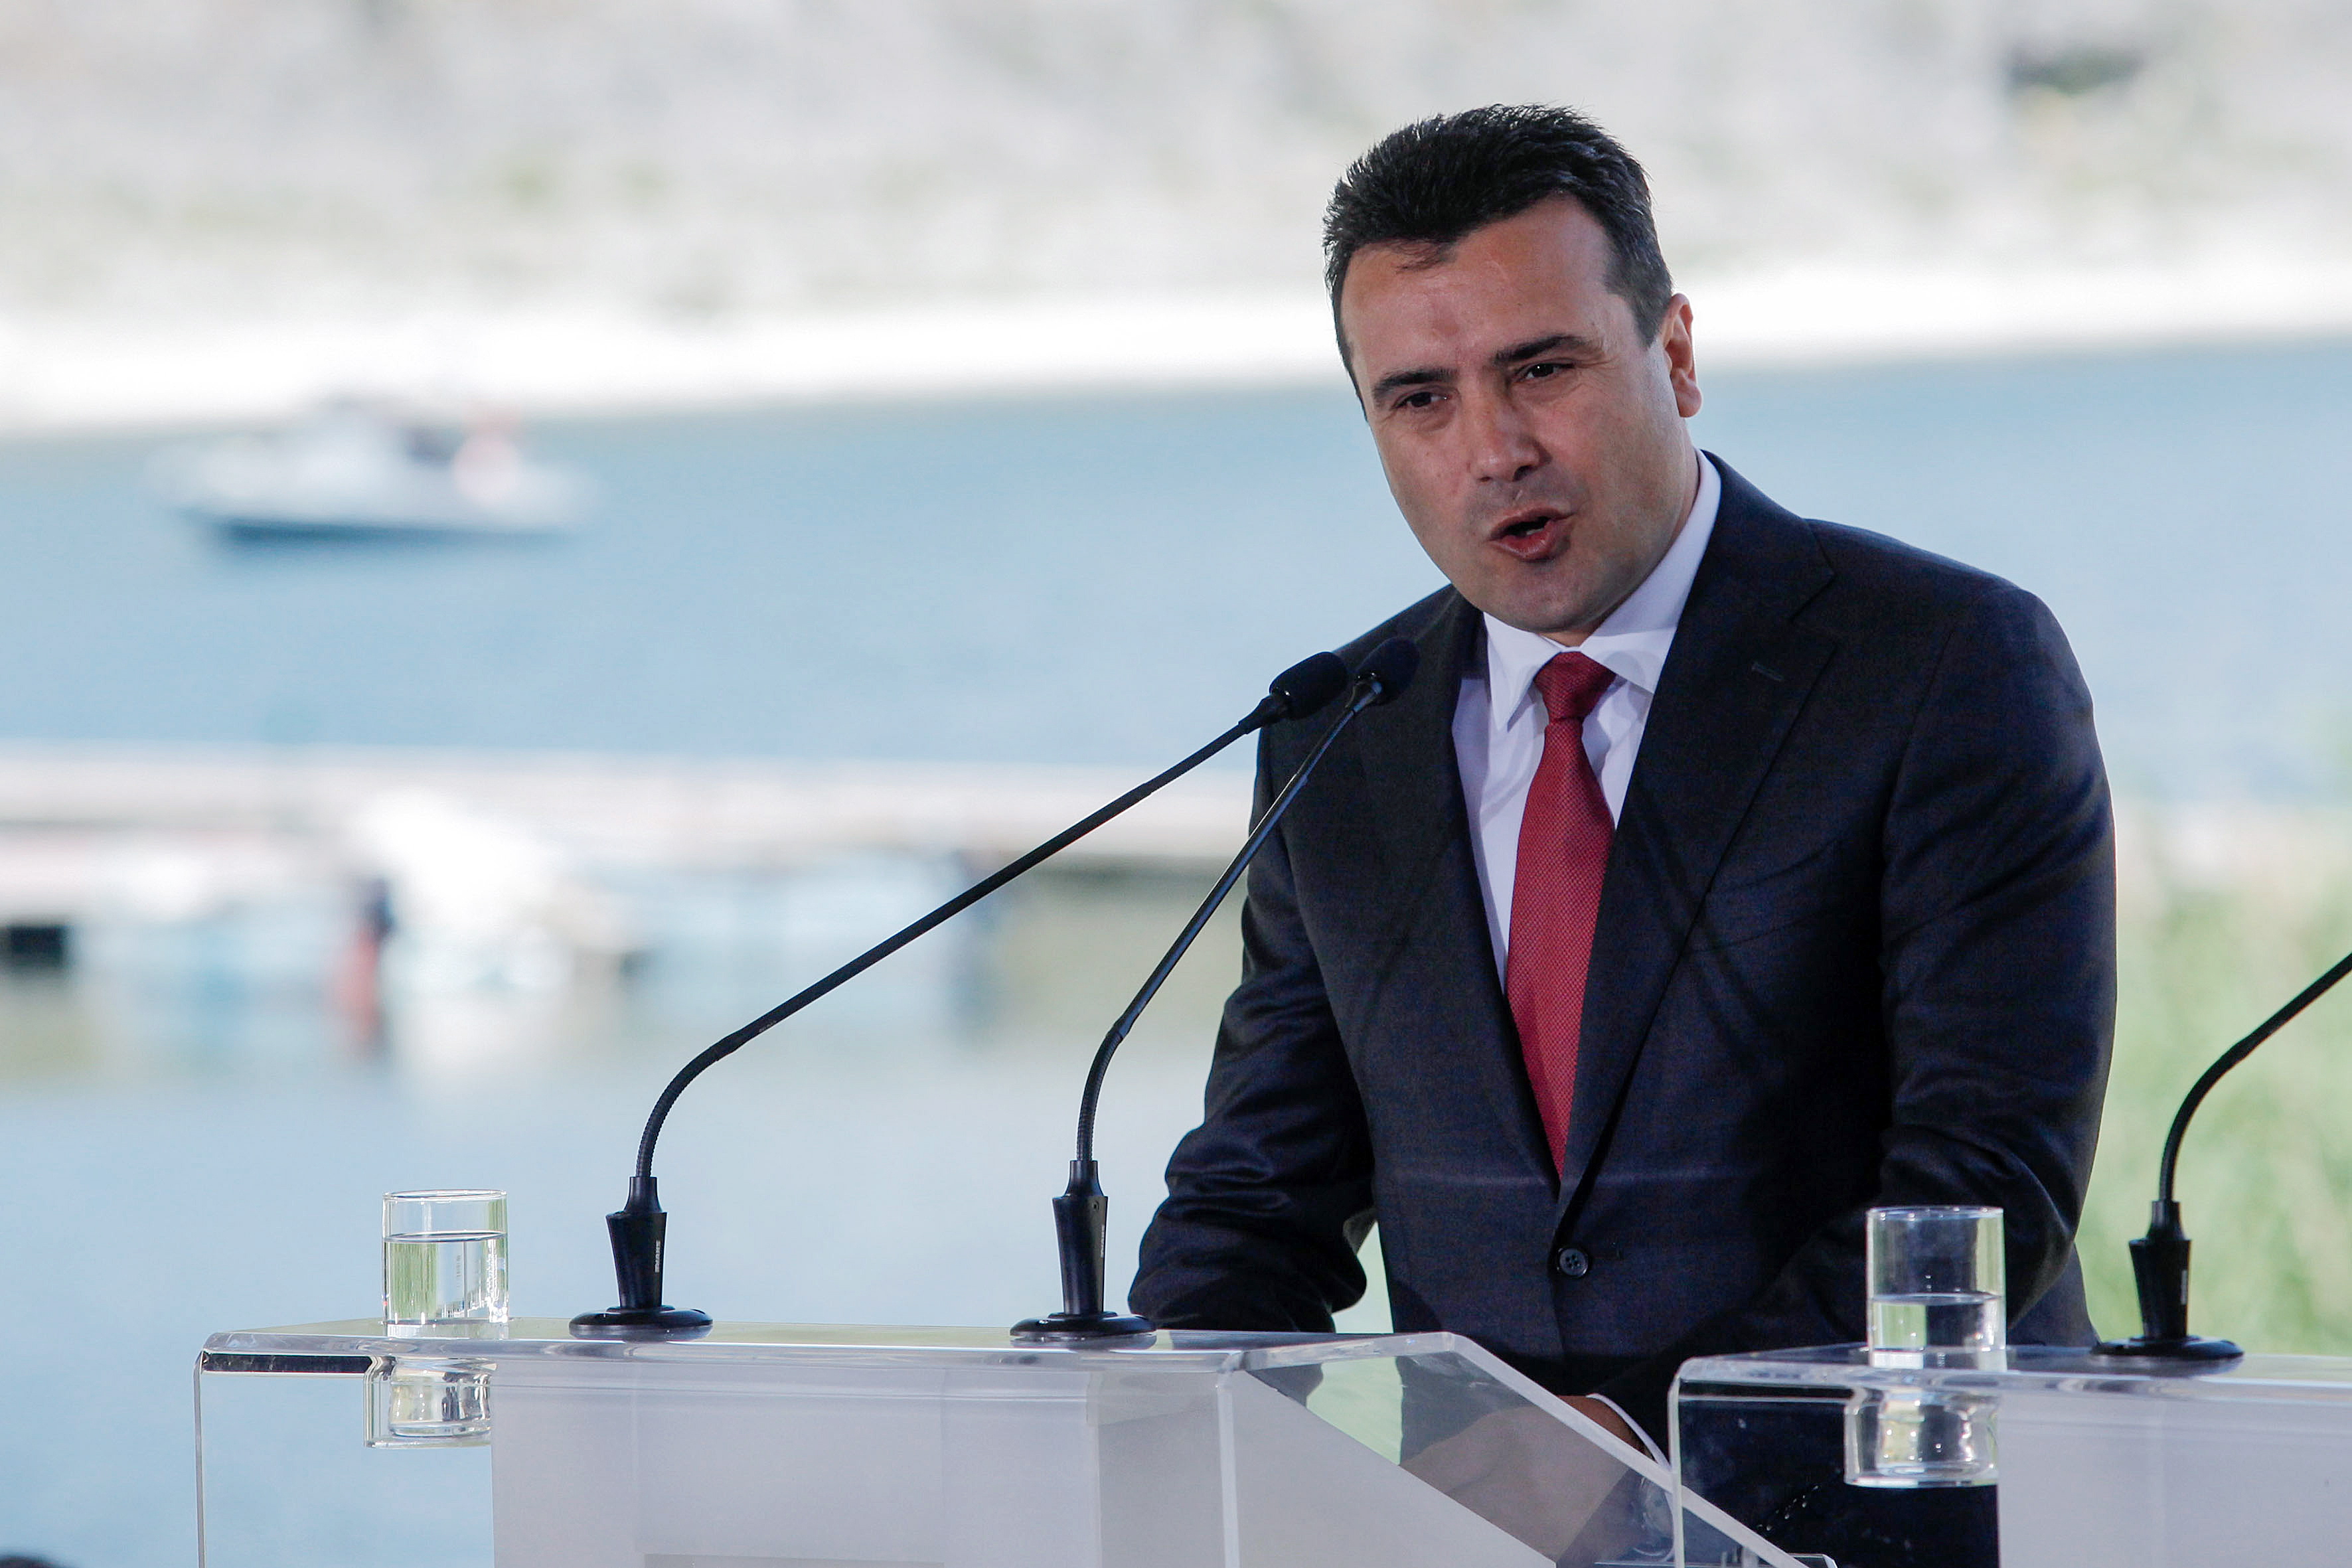 Ζάεφ: Τον Ιανουάριο στο κοινοβούλιο της πΓΔΜ η κύρωση του δημοψηφίσματος